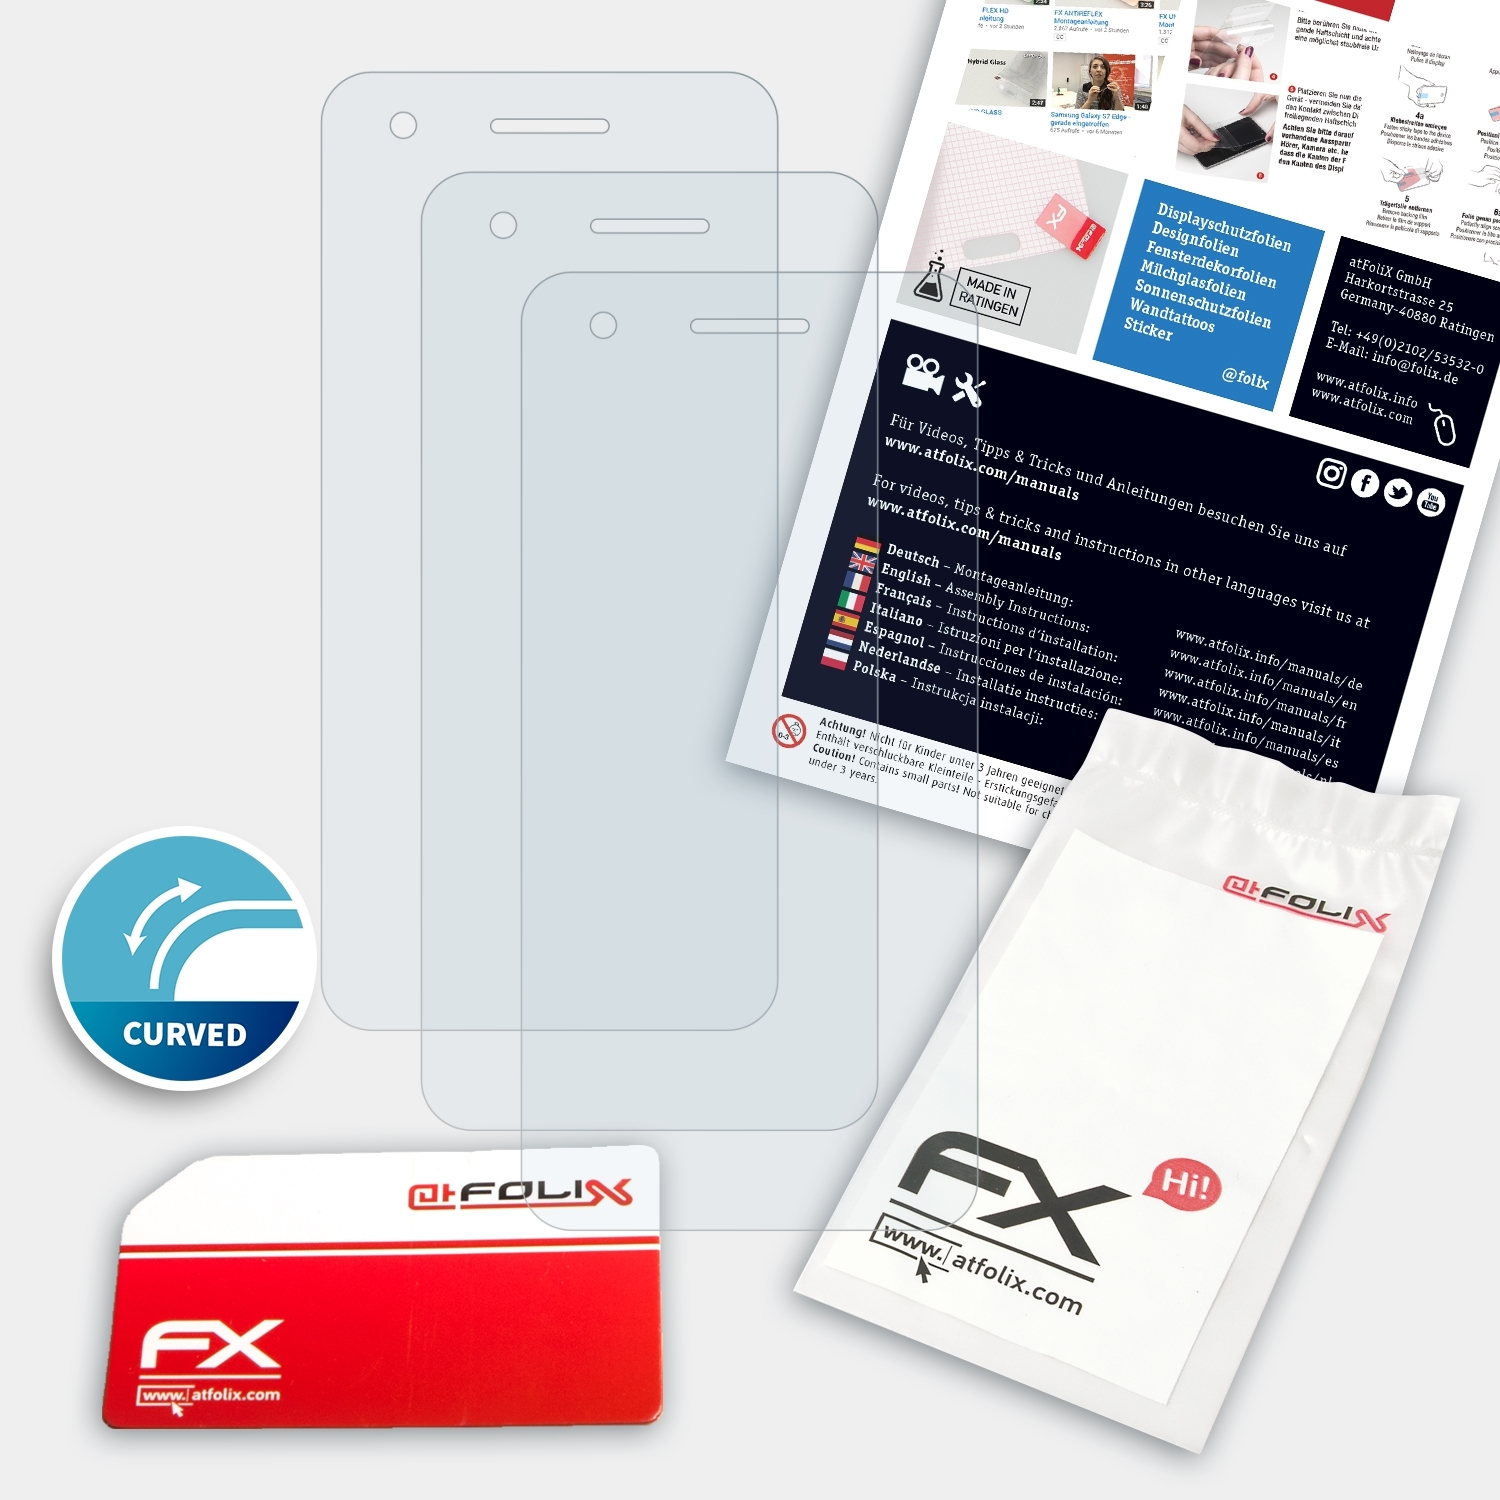 ATFOLIX 3x FX-ActiFleX Smart V8) Vodafone Displayschutz(für